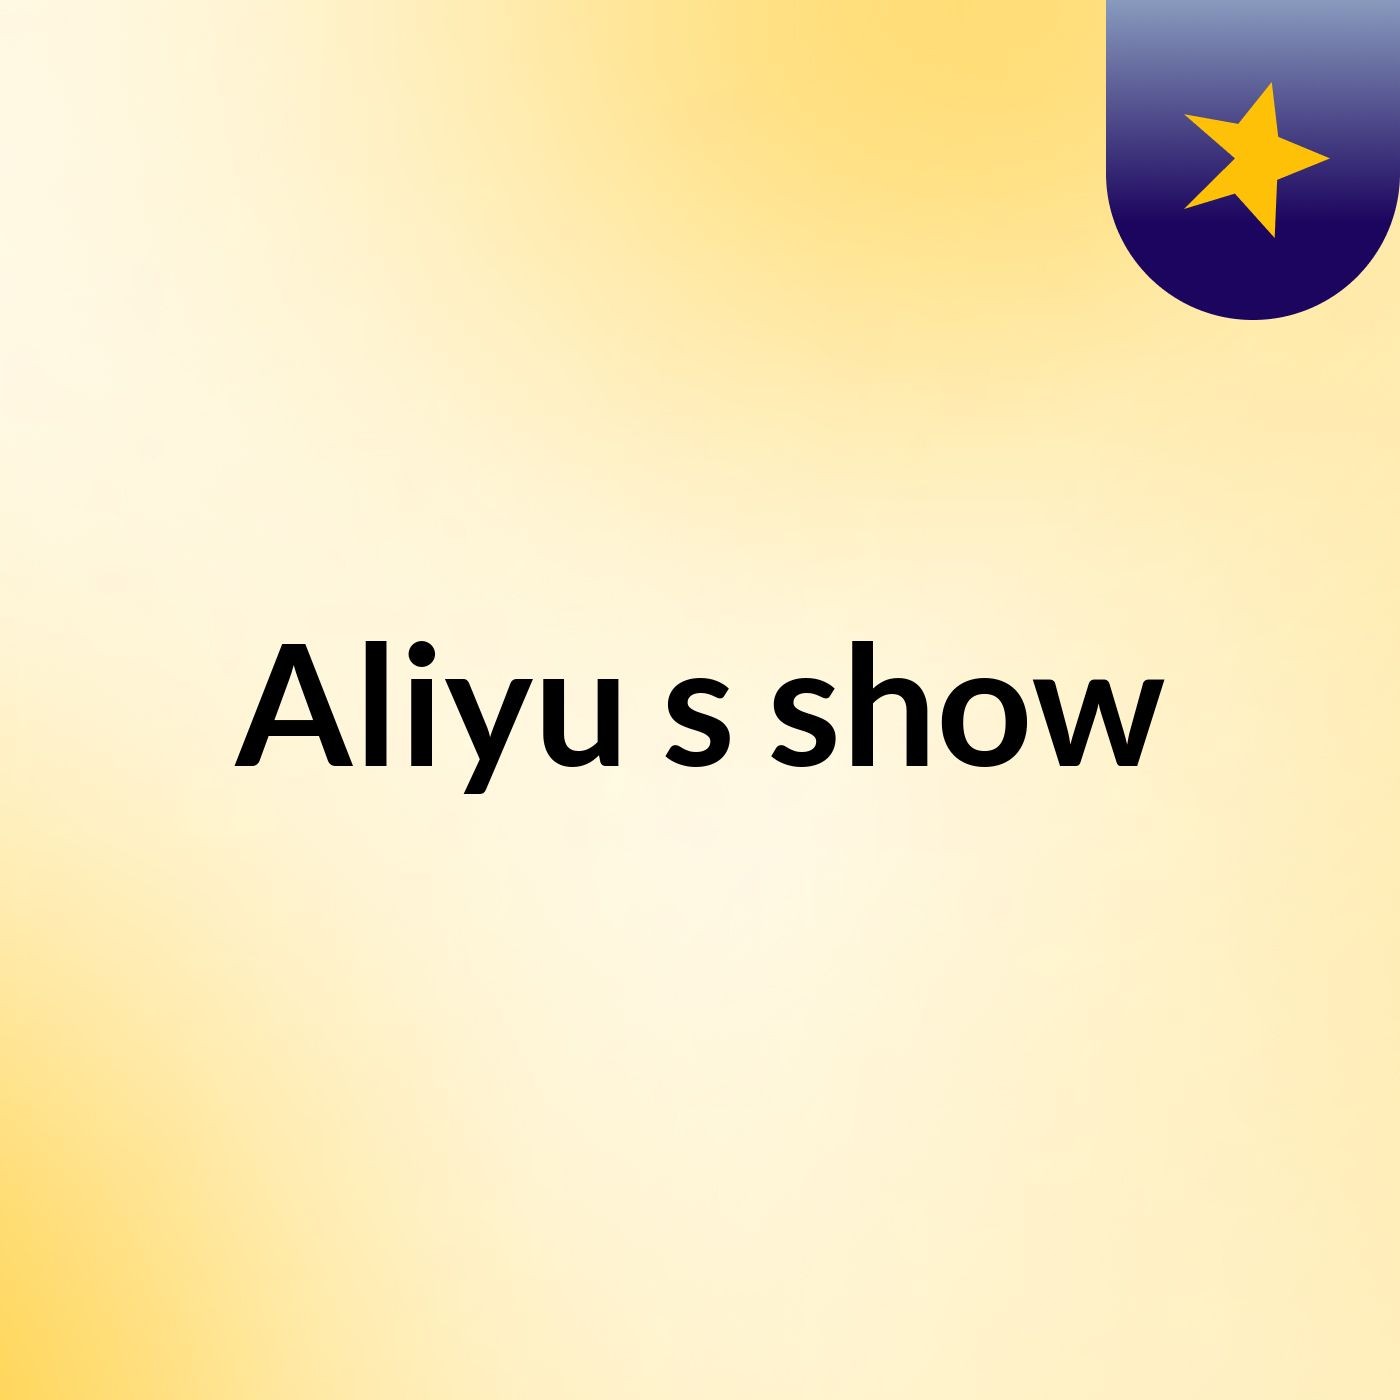 Aliyu's show